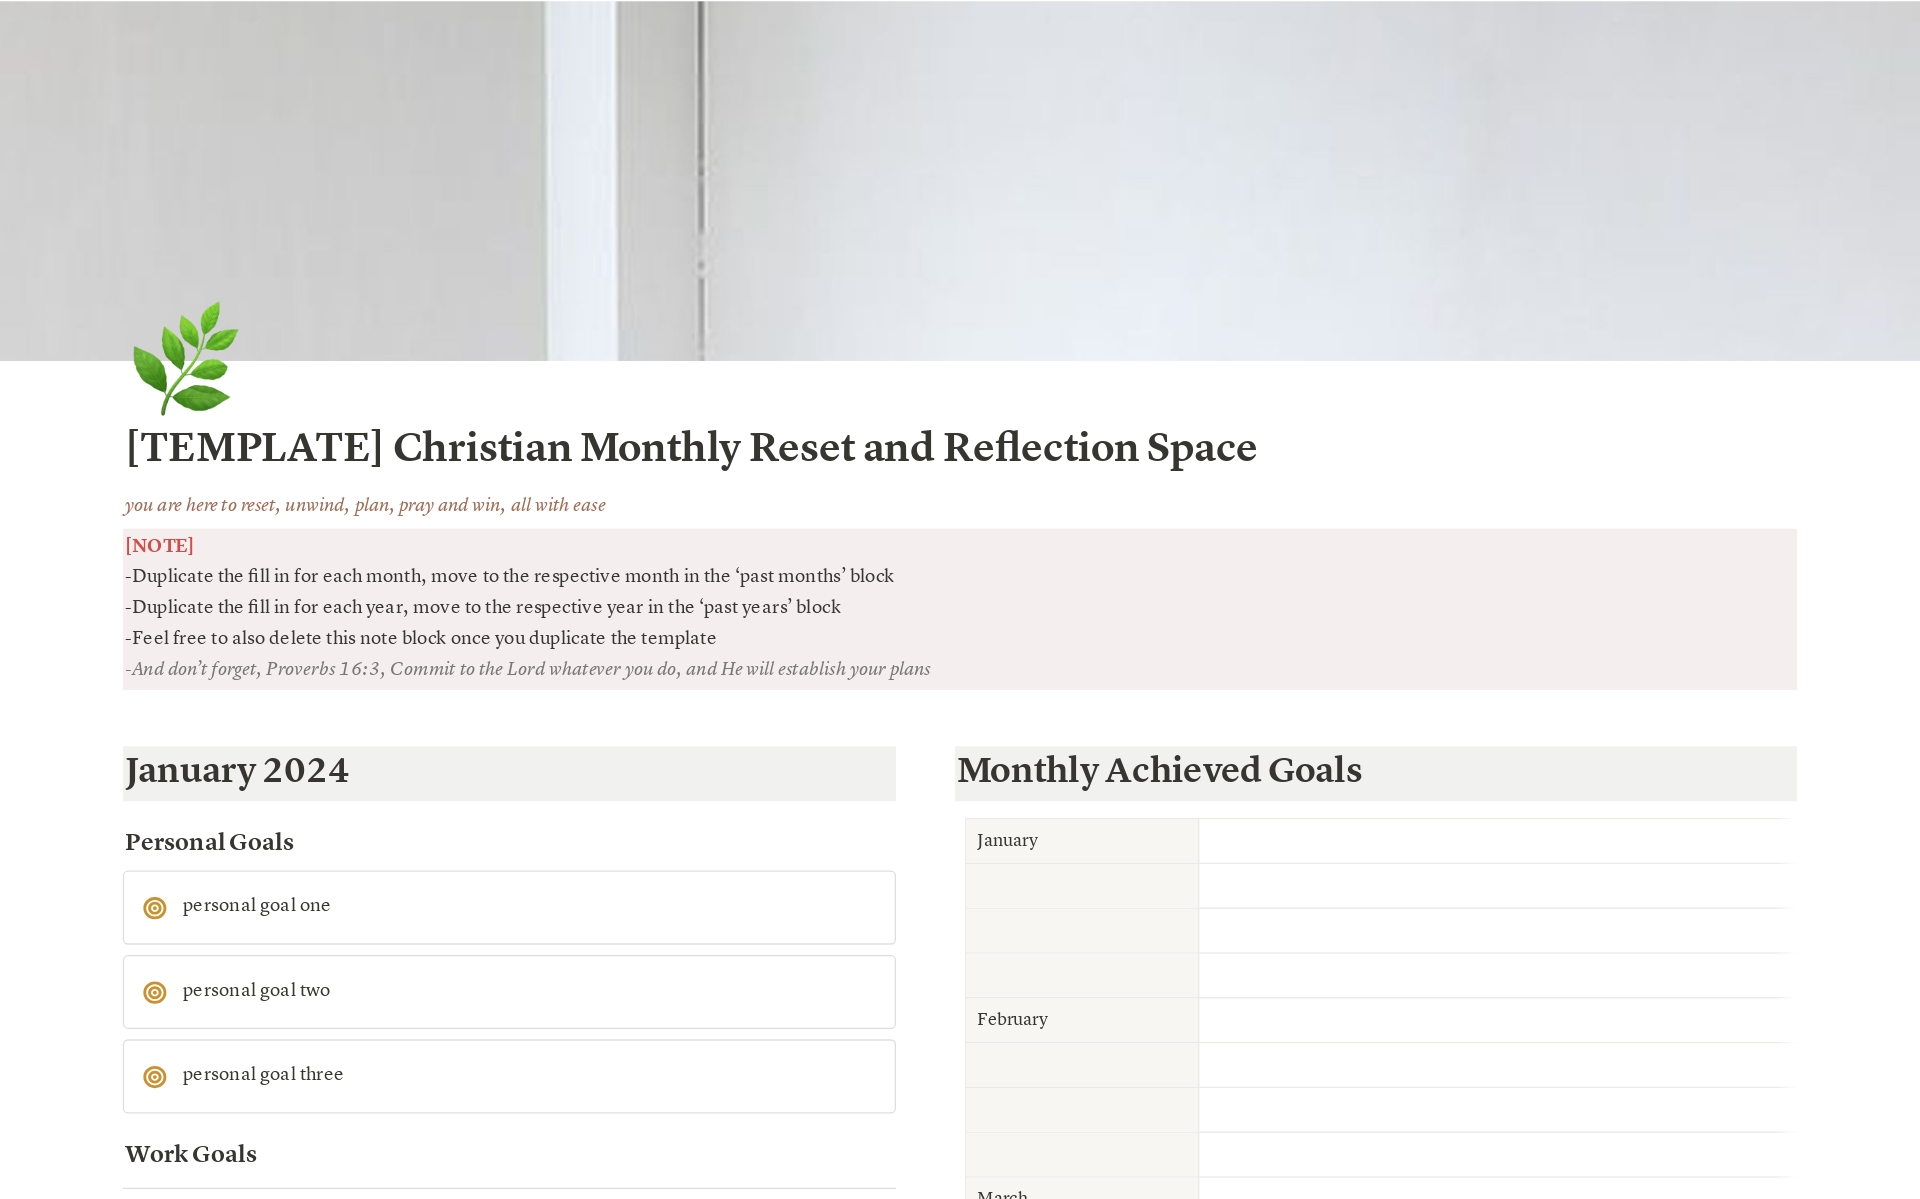 Aperçu du modèle de Christian Monthly Reset & Reflection Space